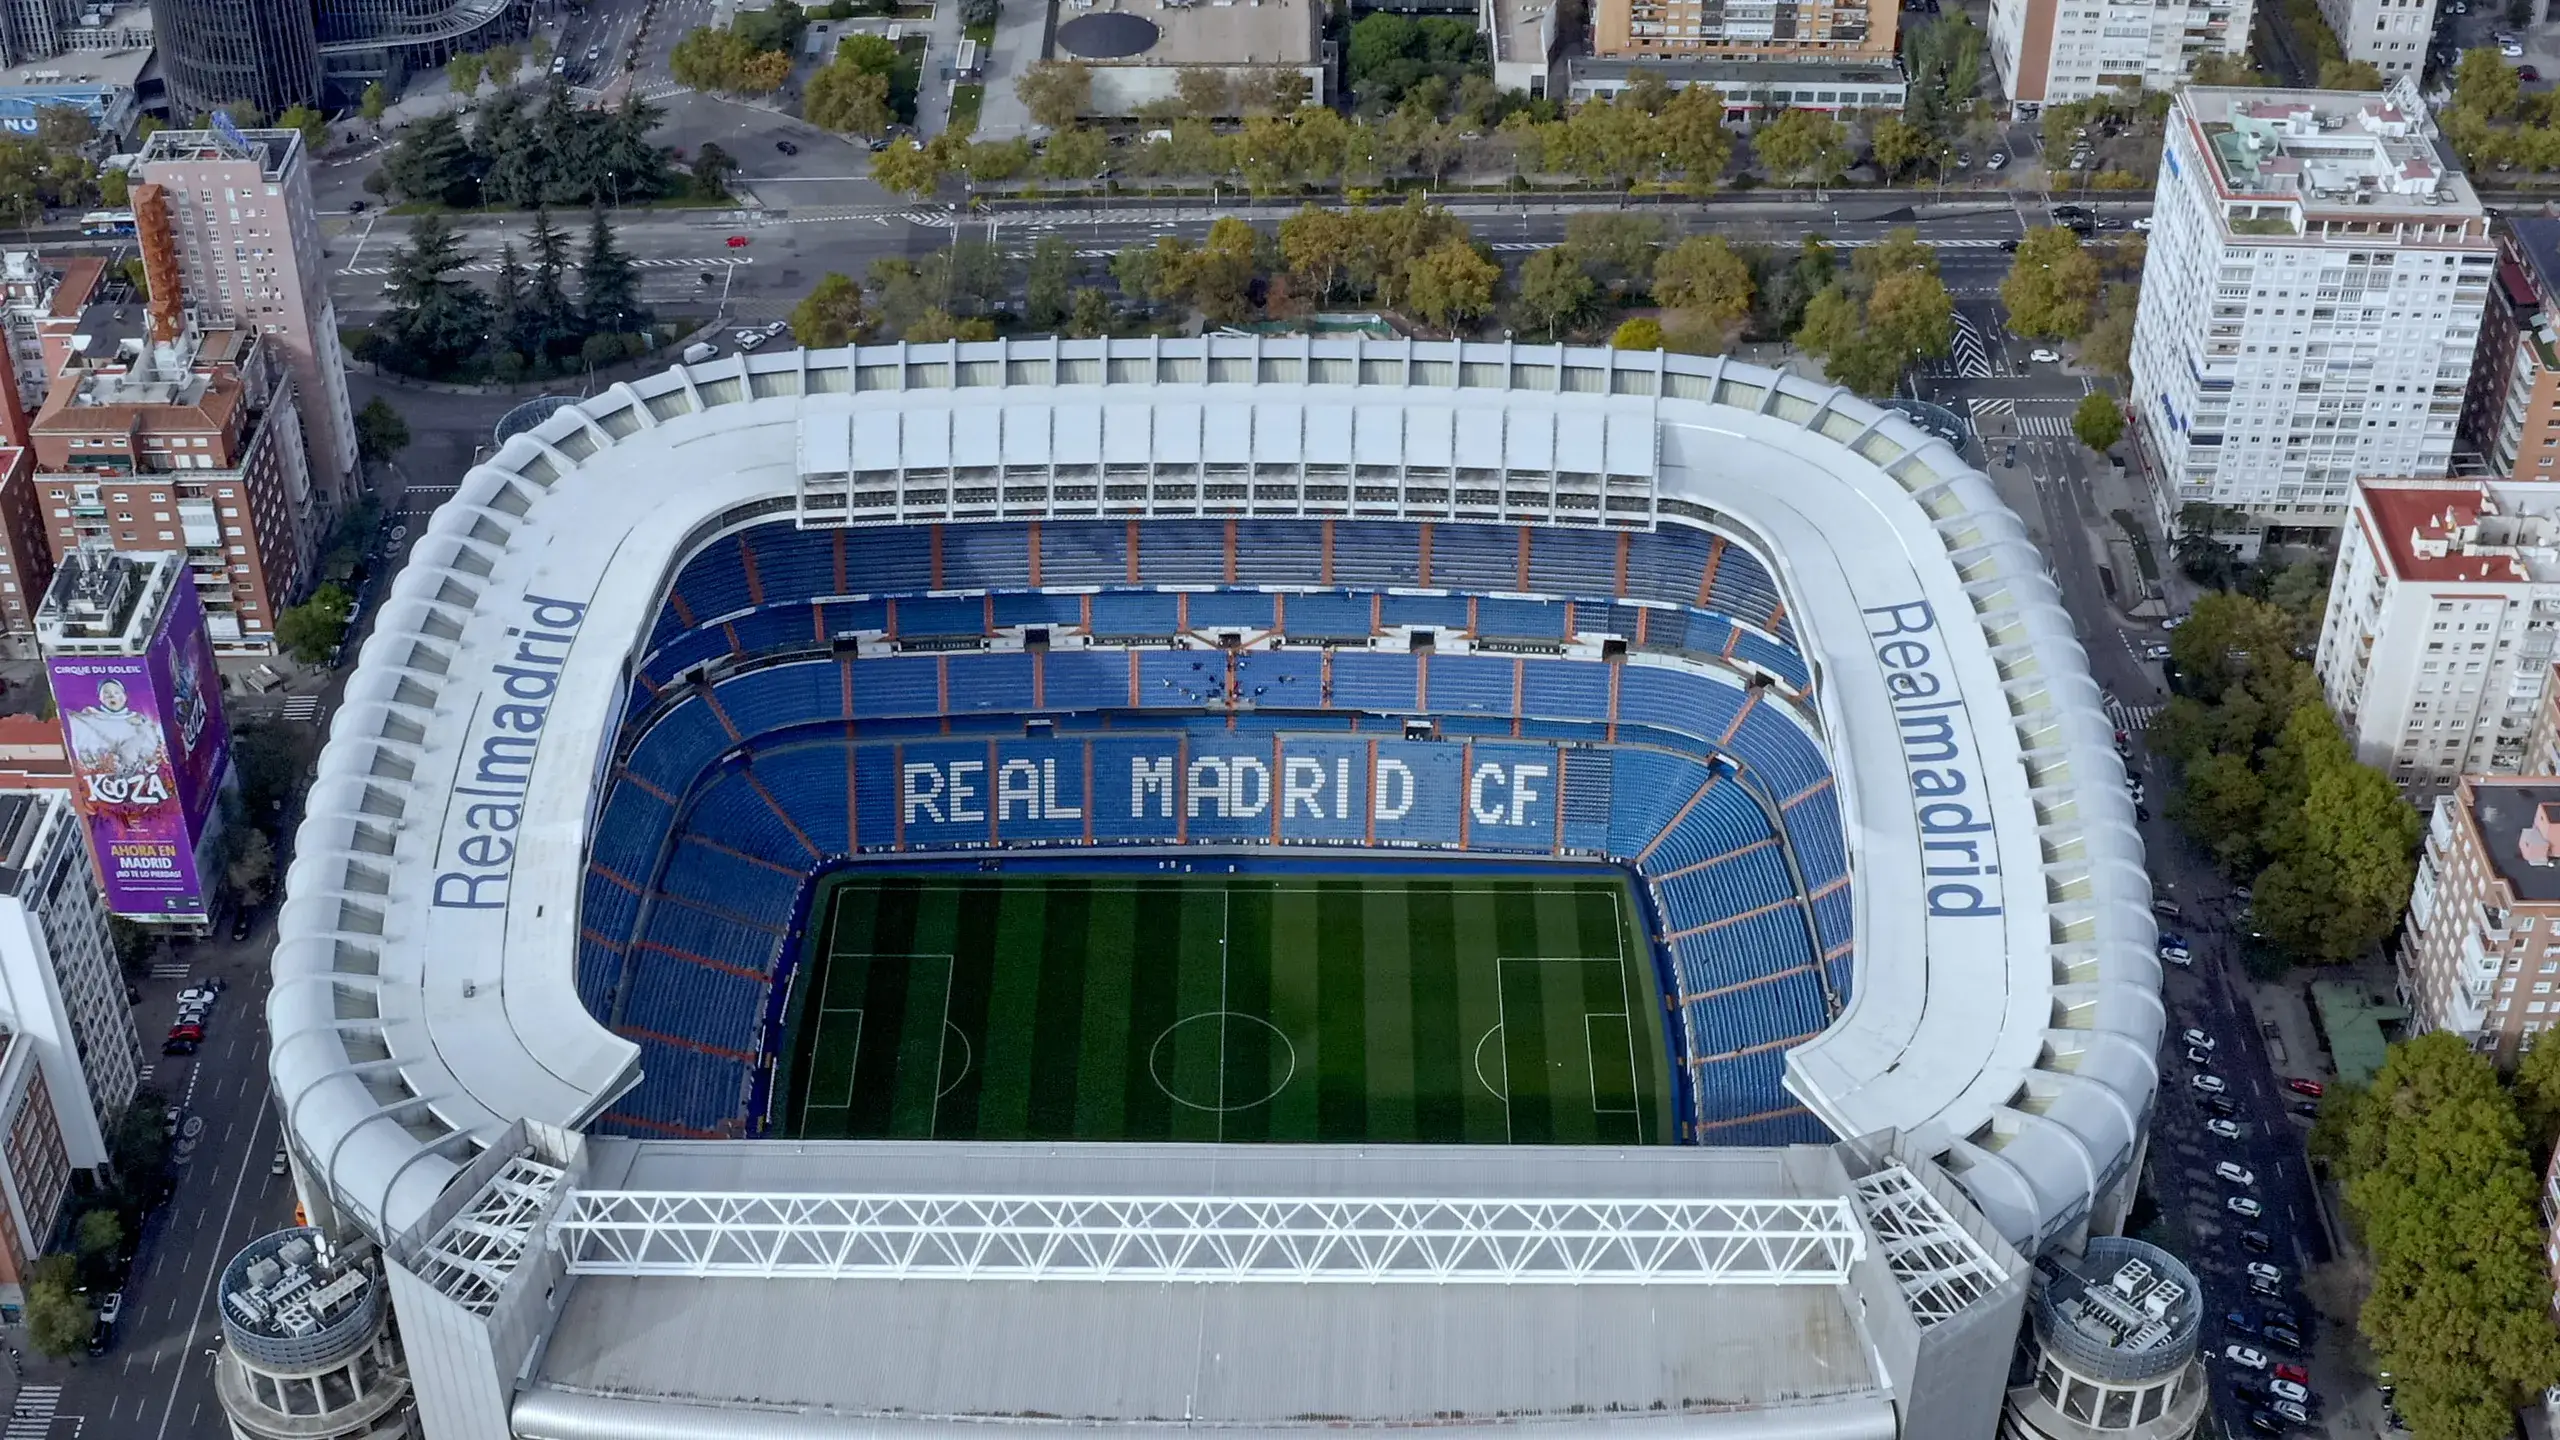 Sân vận động Estadio Santiago Bernabéu – Ngôi đền bóng đá của Real Madrid